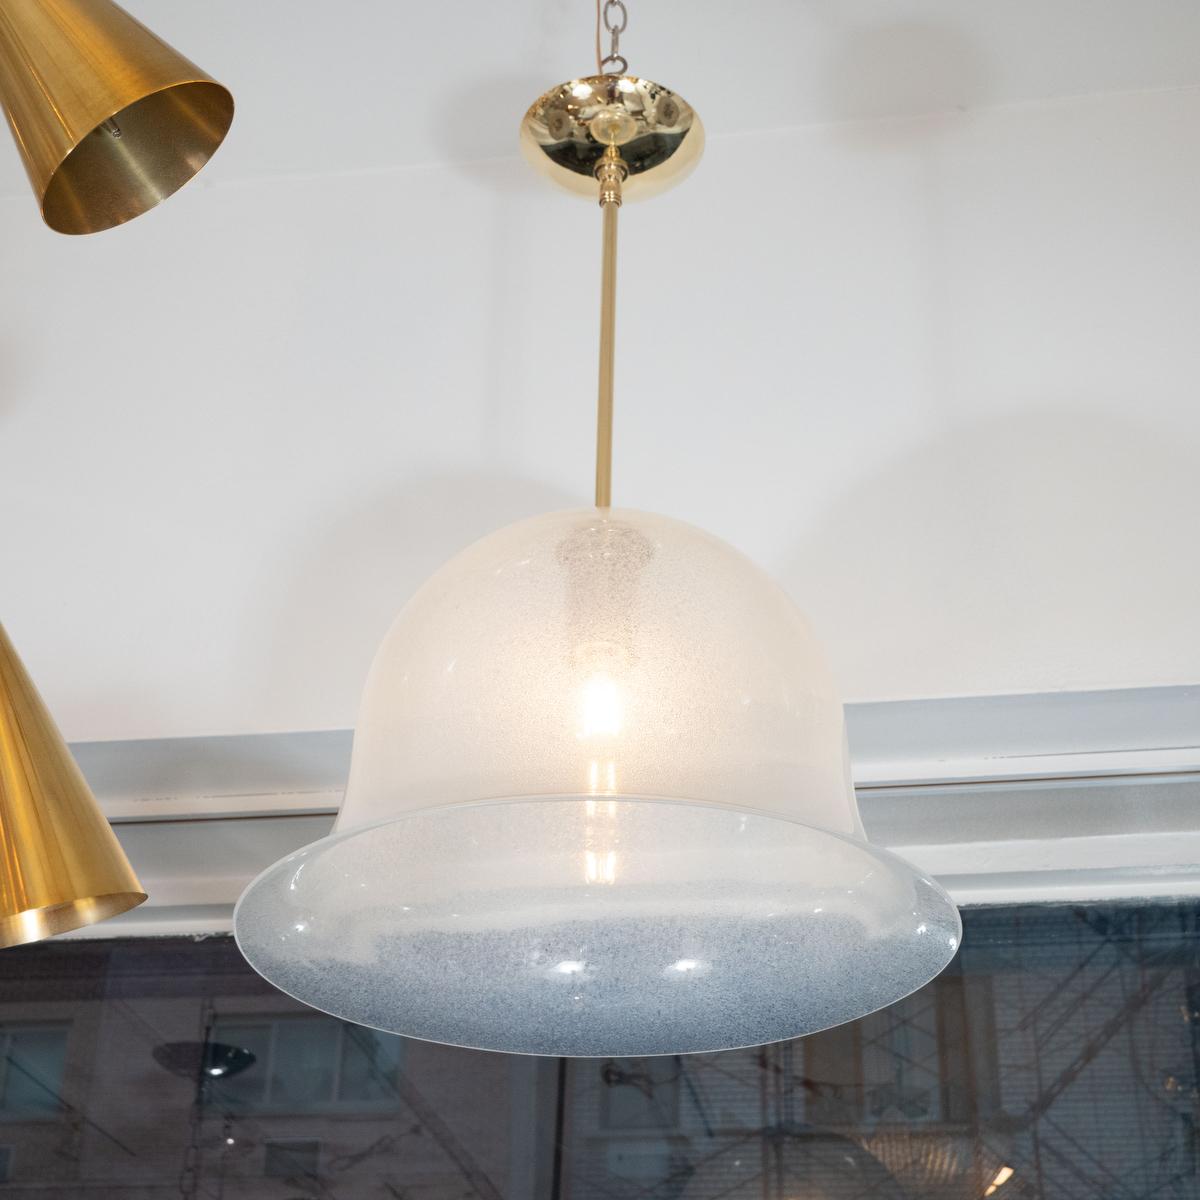 Glockenförmige Muranoglas-Hängeleuchte mit Luftblasendesign von Carlo Nason für Mazzega.